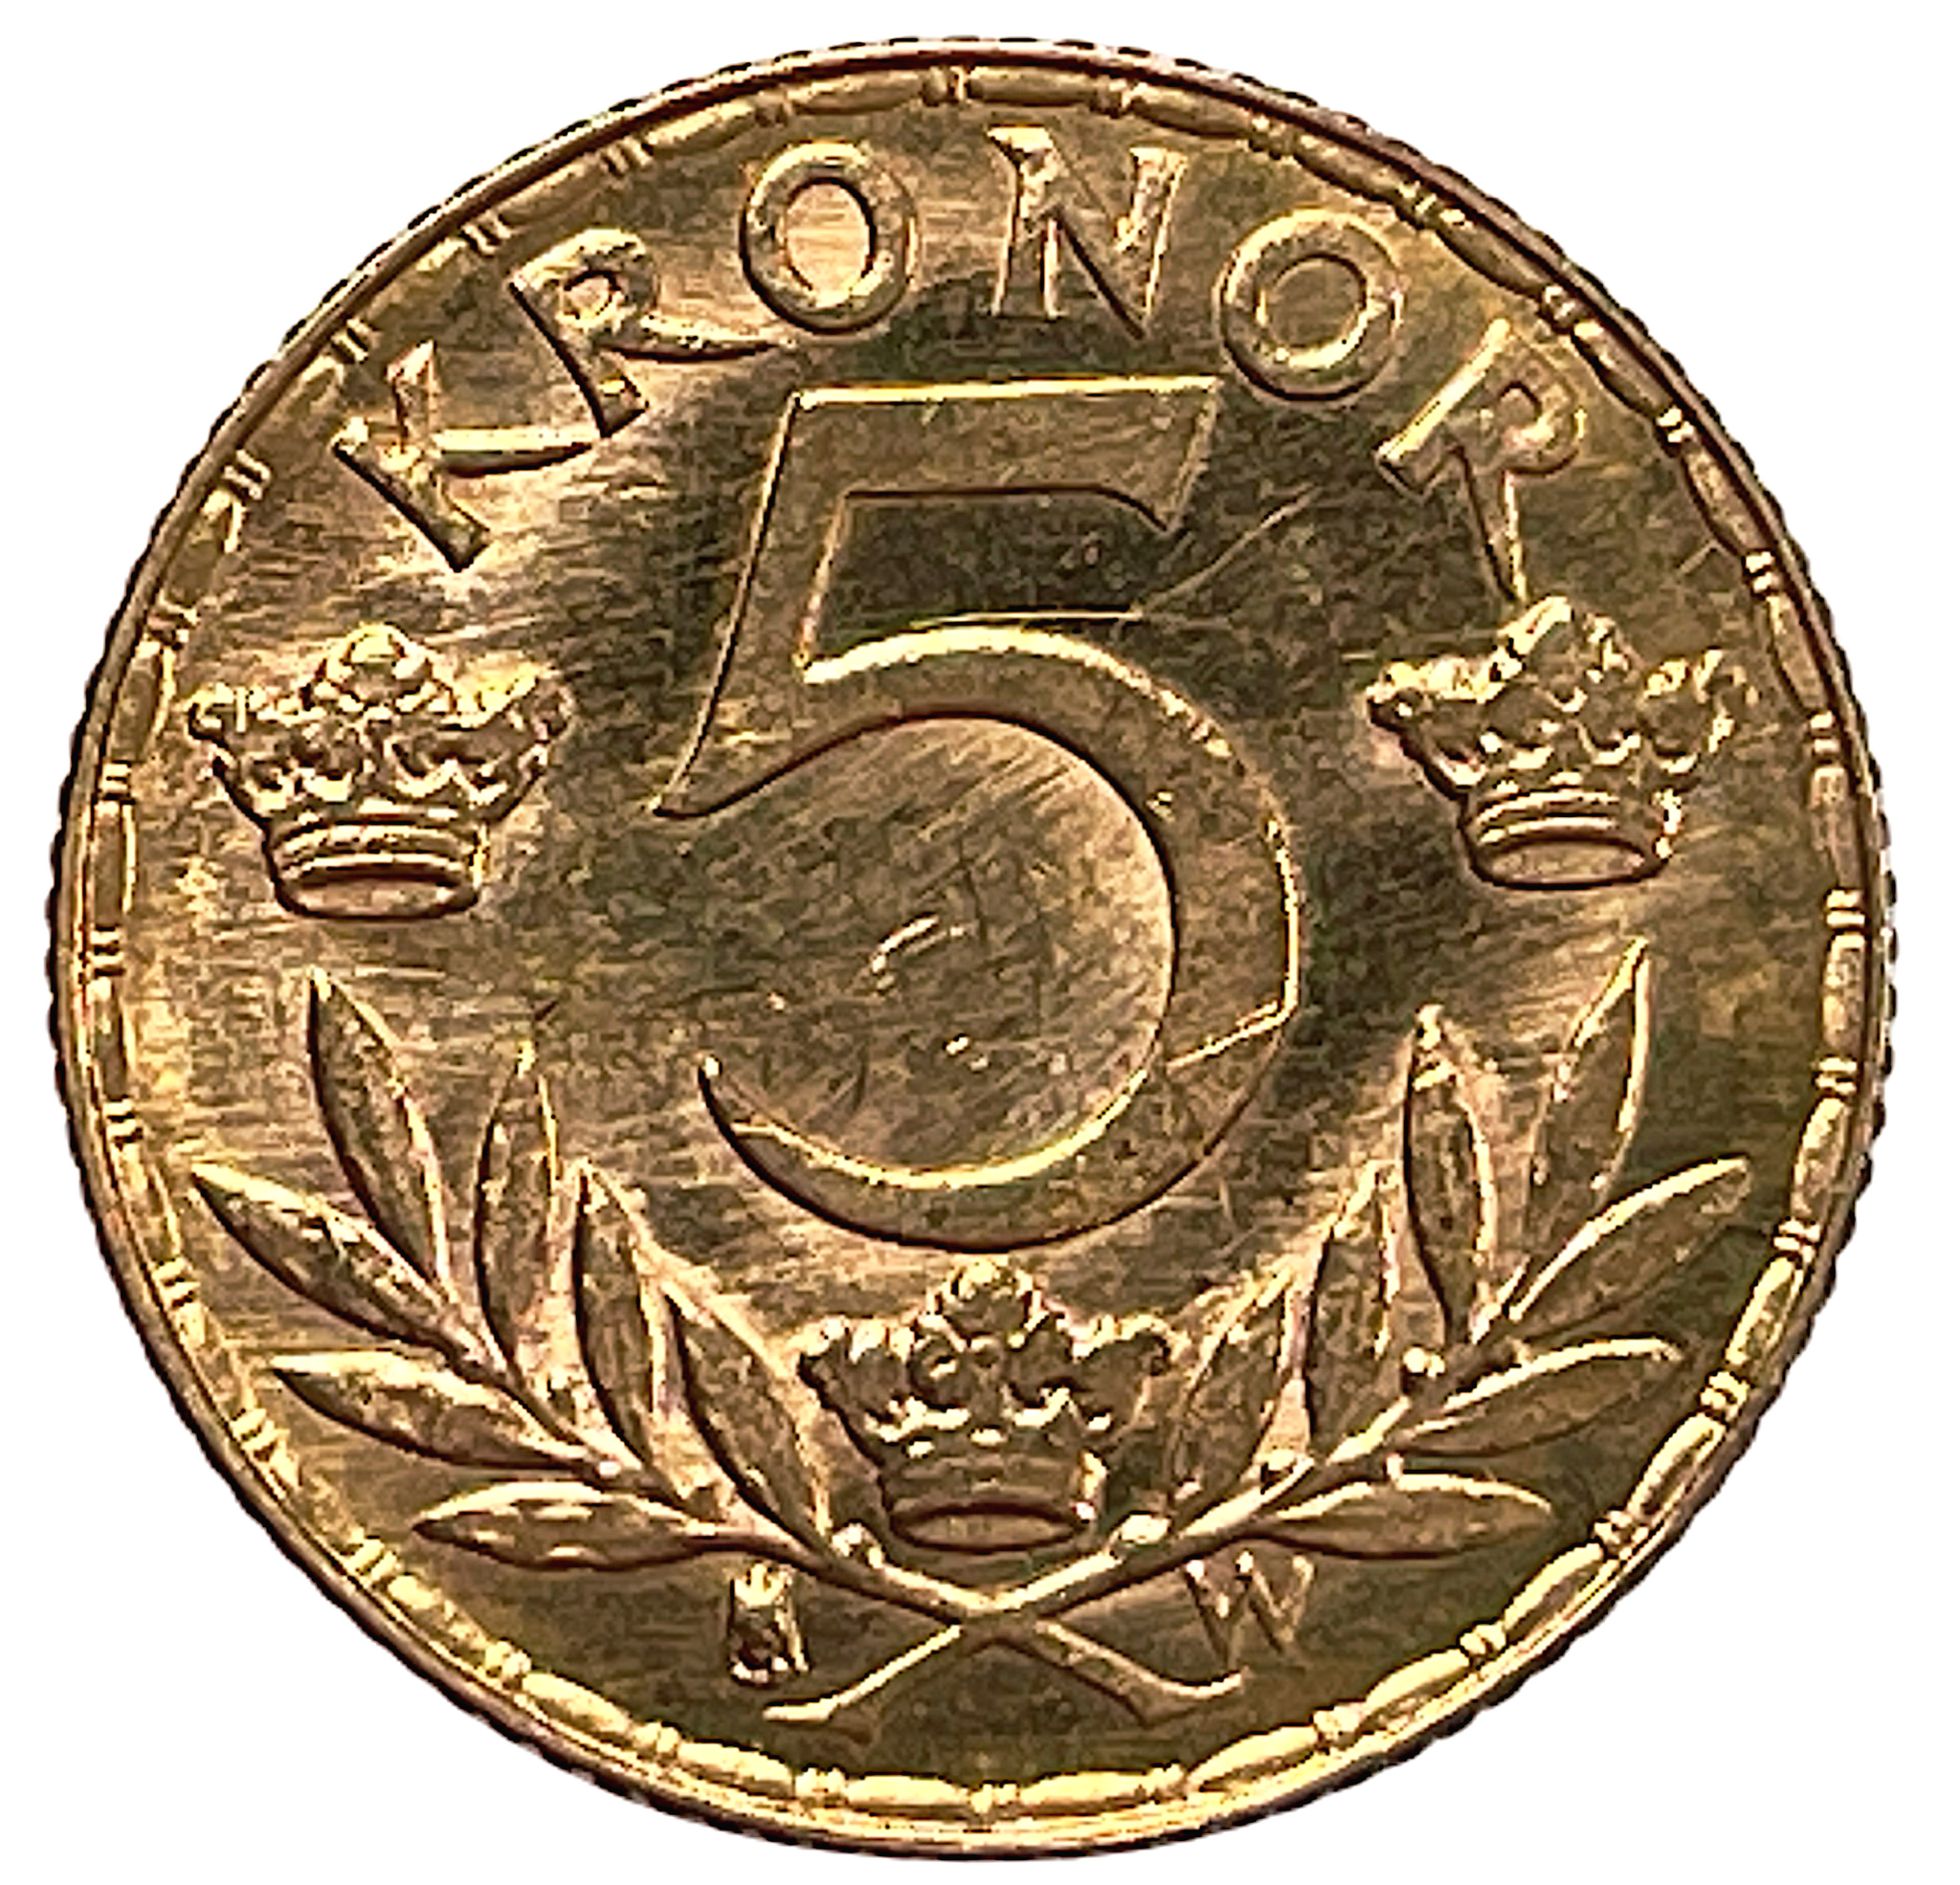 Gustav V - 5 Kronor 1920